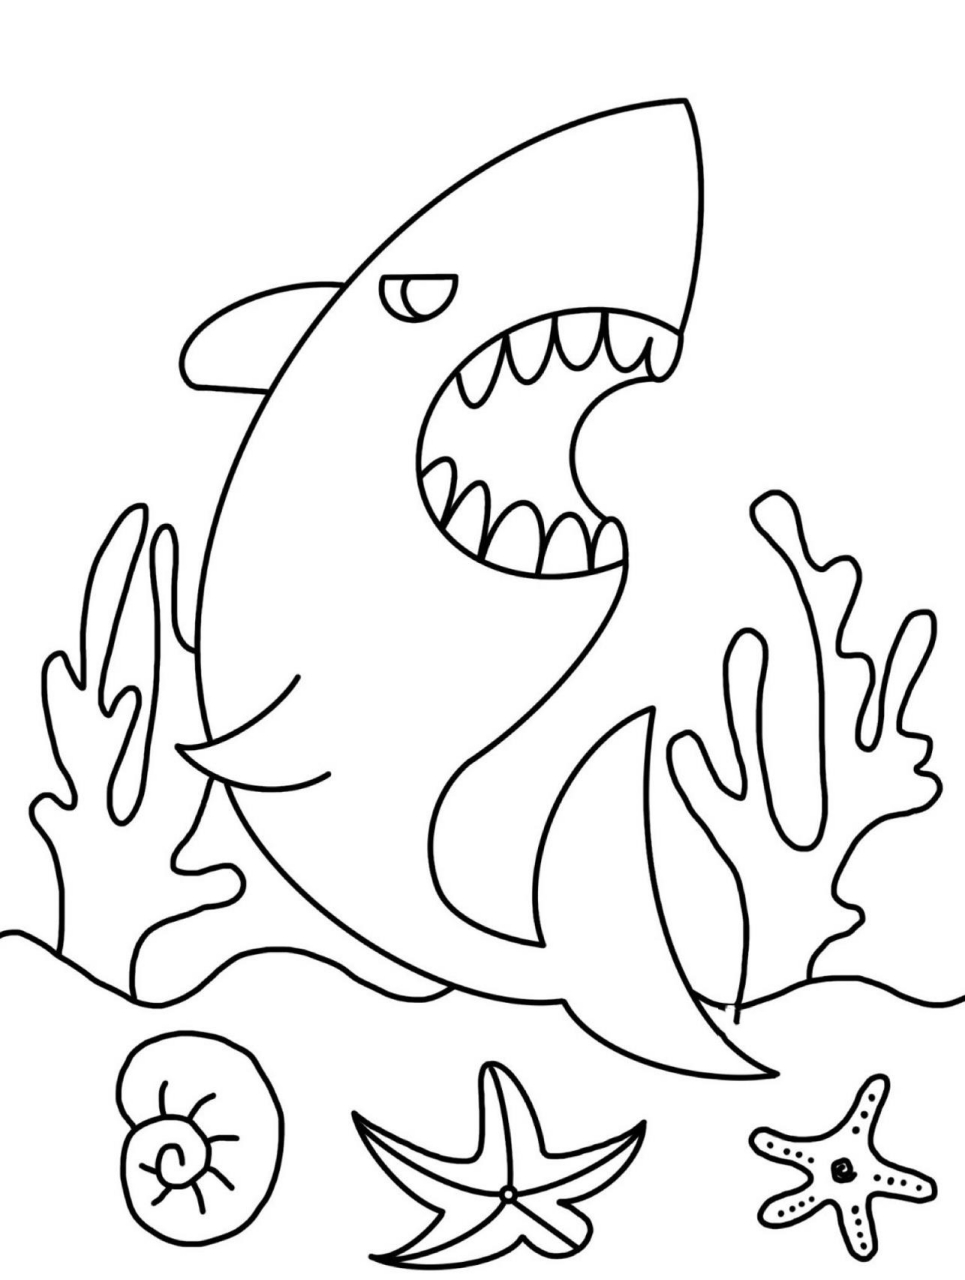 画大白鲨 步骤图片